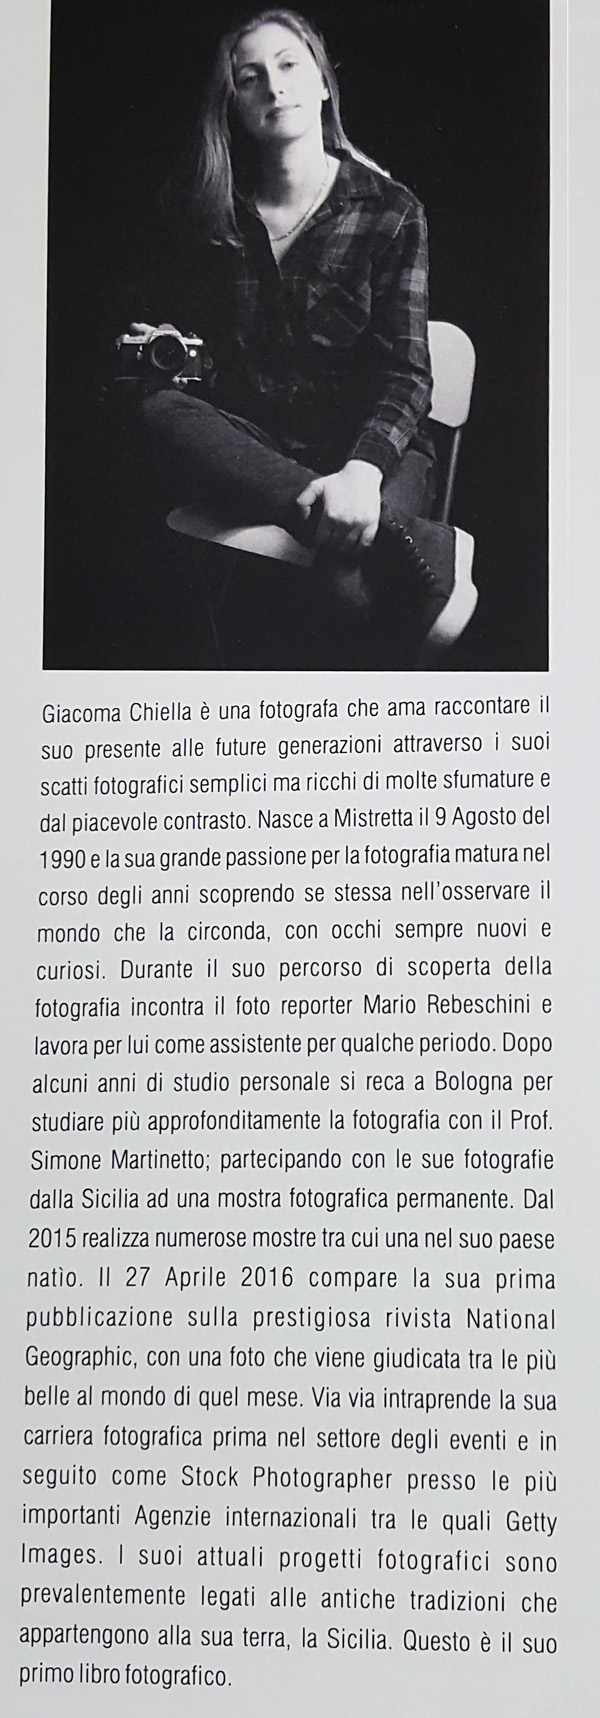 Profilo biografico Giacoma Chiella